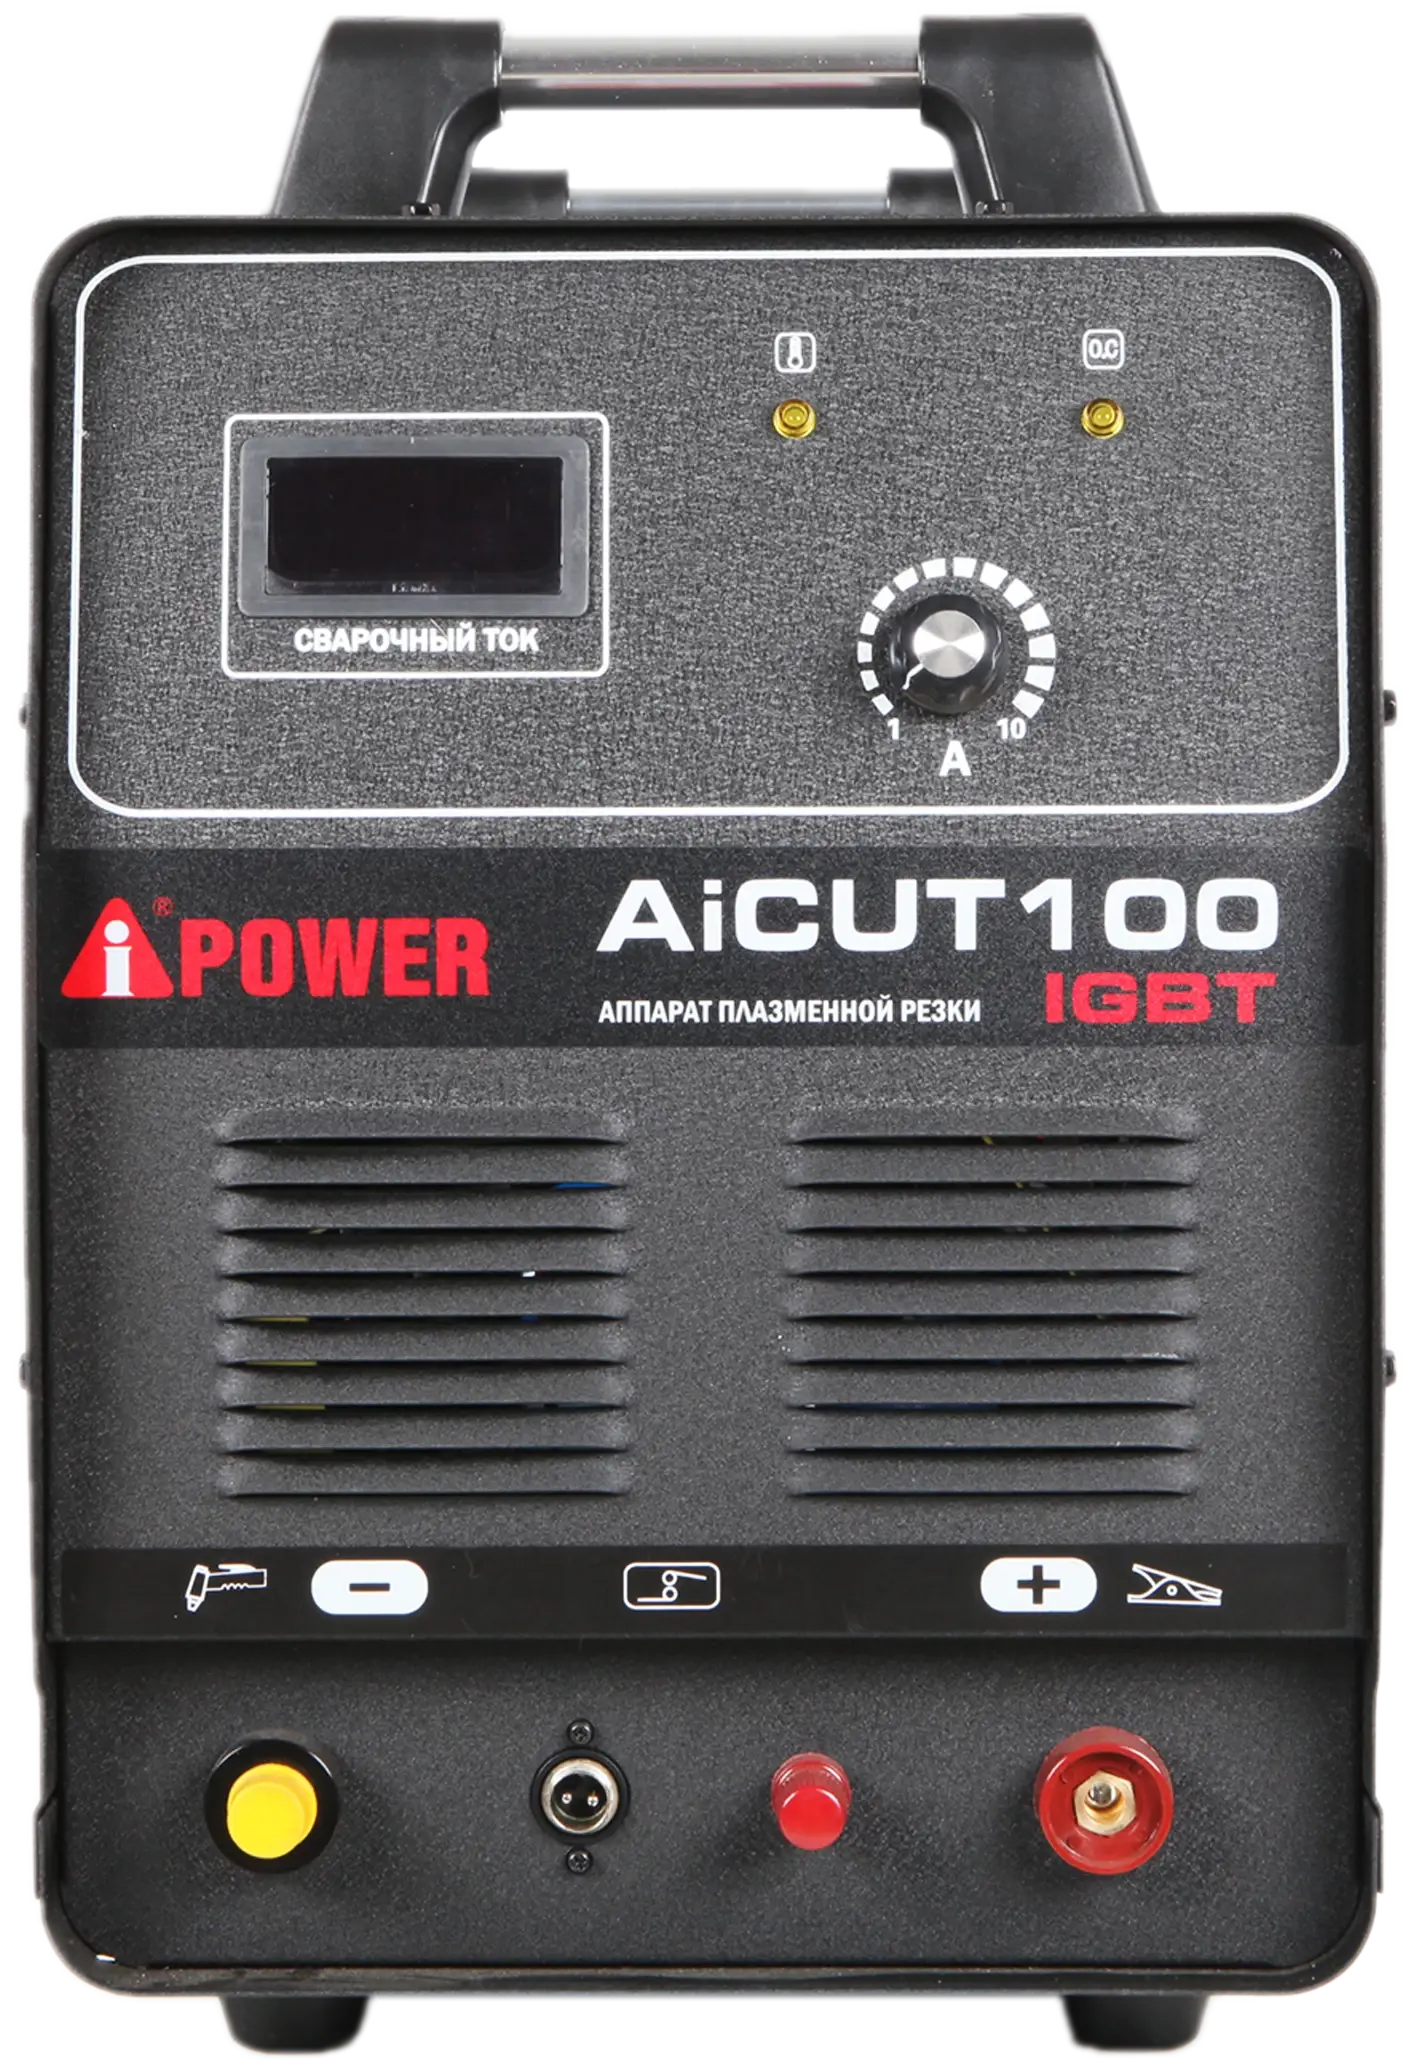 Аппарат плазменной резки A-IPOWER AICUT100 Гарантия 4 года Официальный магазин